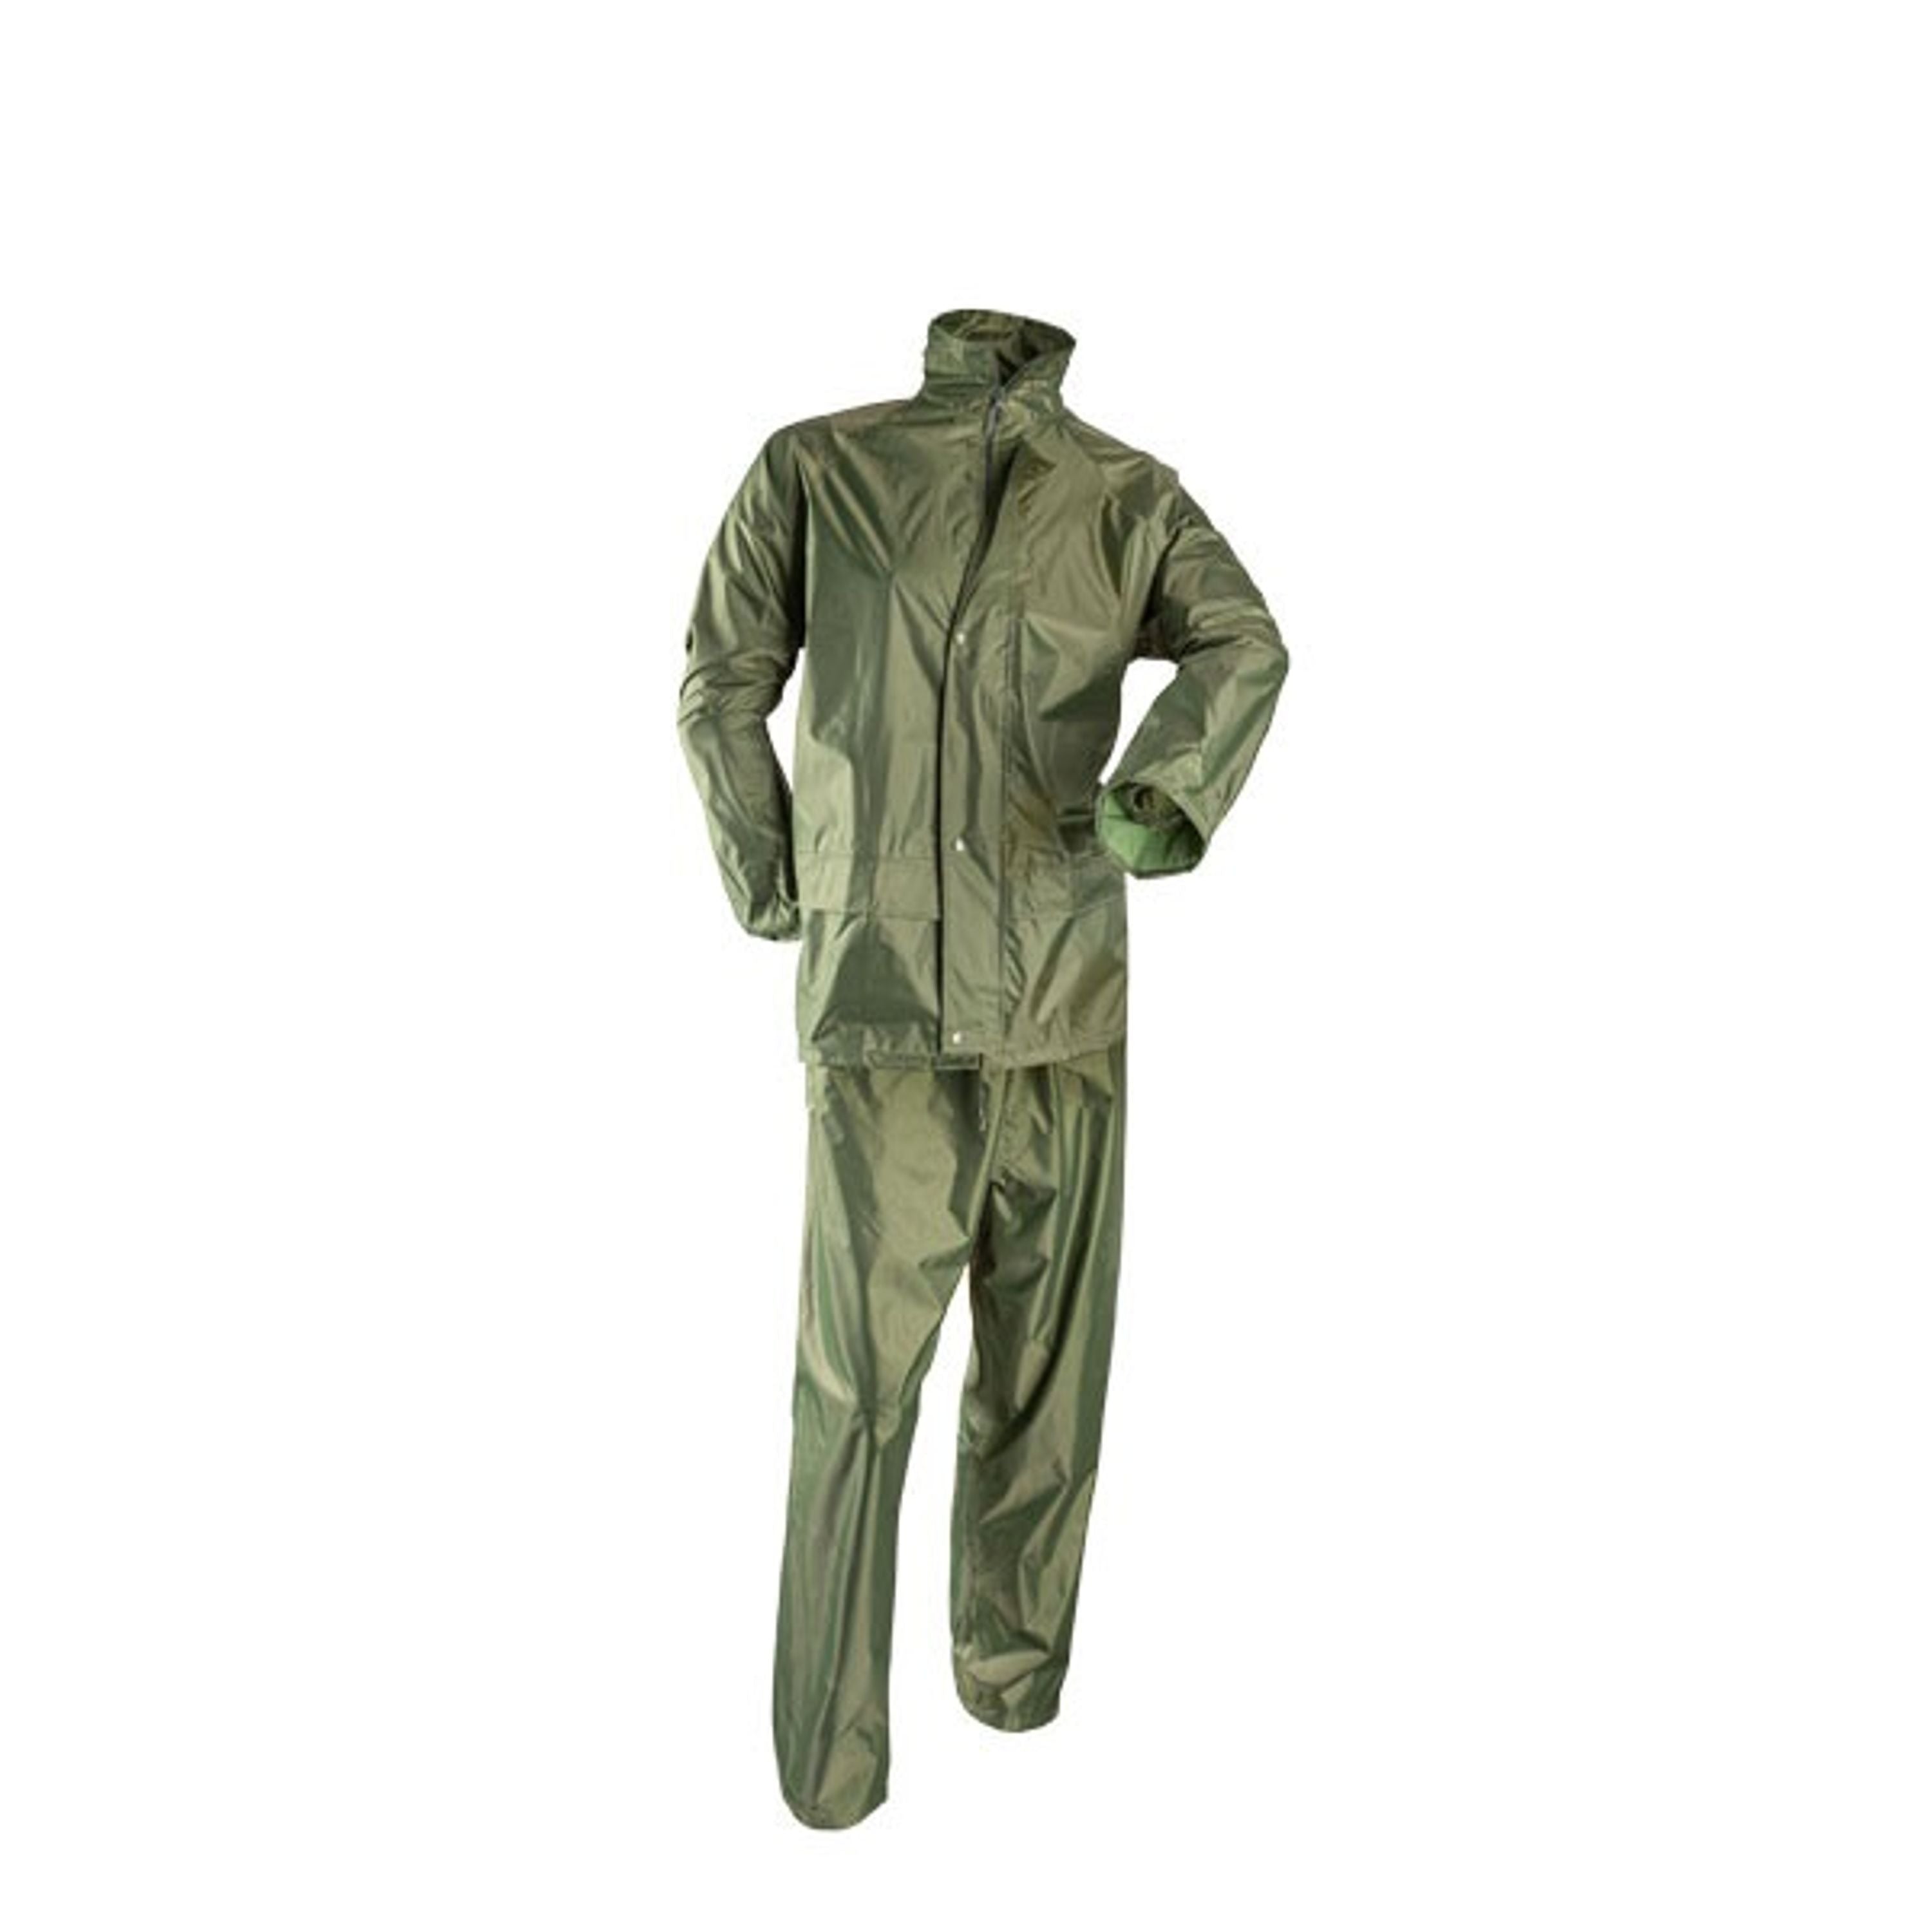 Ensemble imperméable en pvc - Homme||PVC rain suit - Men's